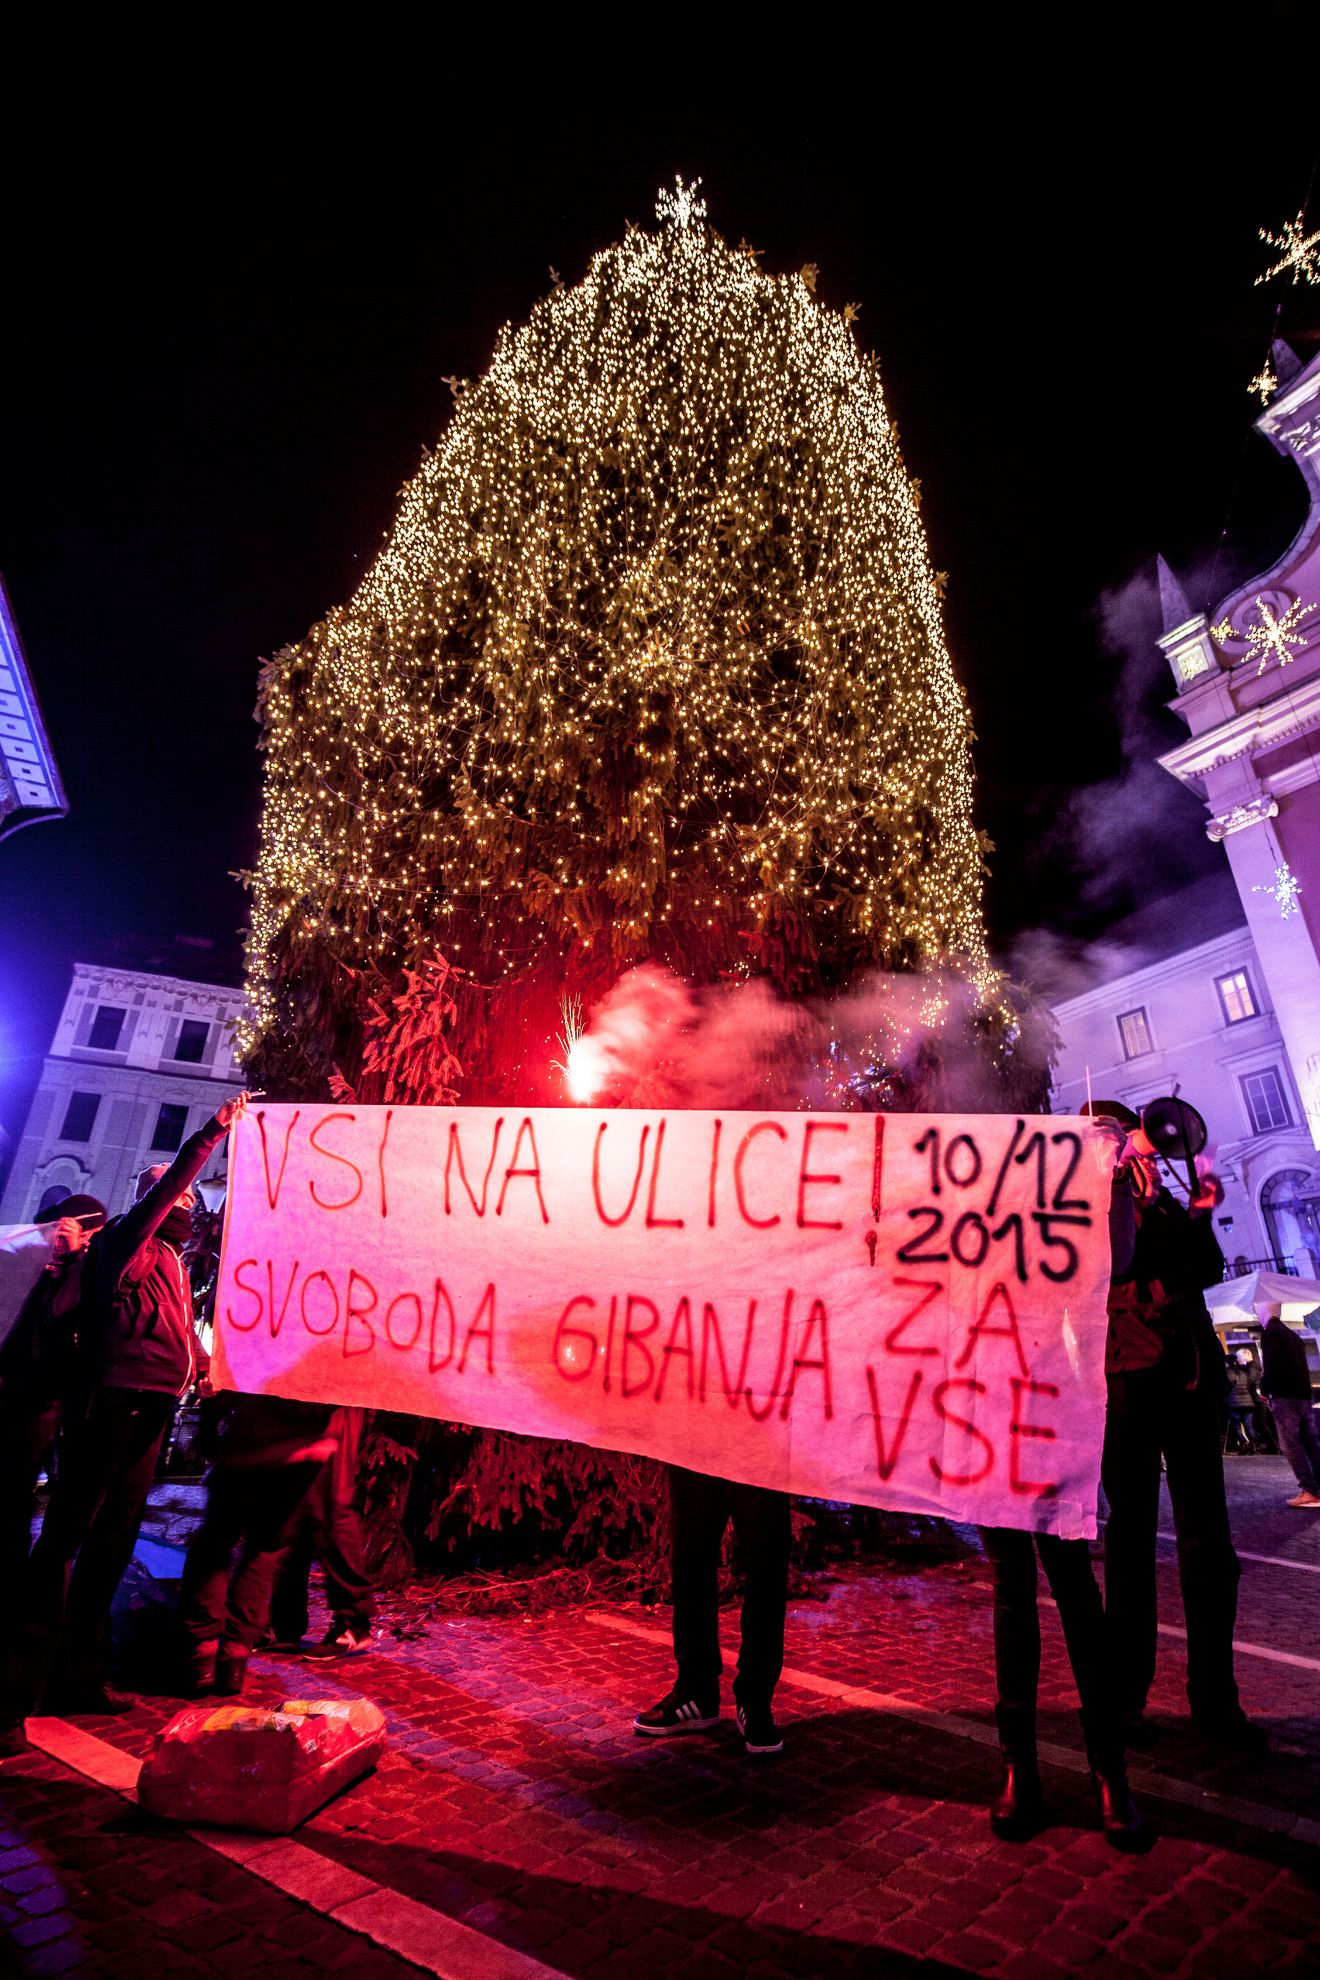 Ljubljana, Prešernov trg. Obešanje bodoče žice na novoletno jelko. Akcija proti oviranju svobode gibanja in napoved demonstracij 10.12.2015